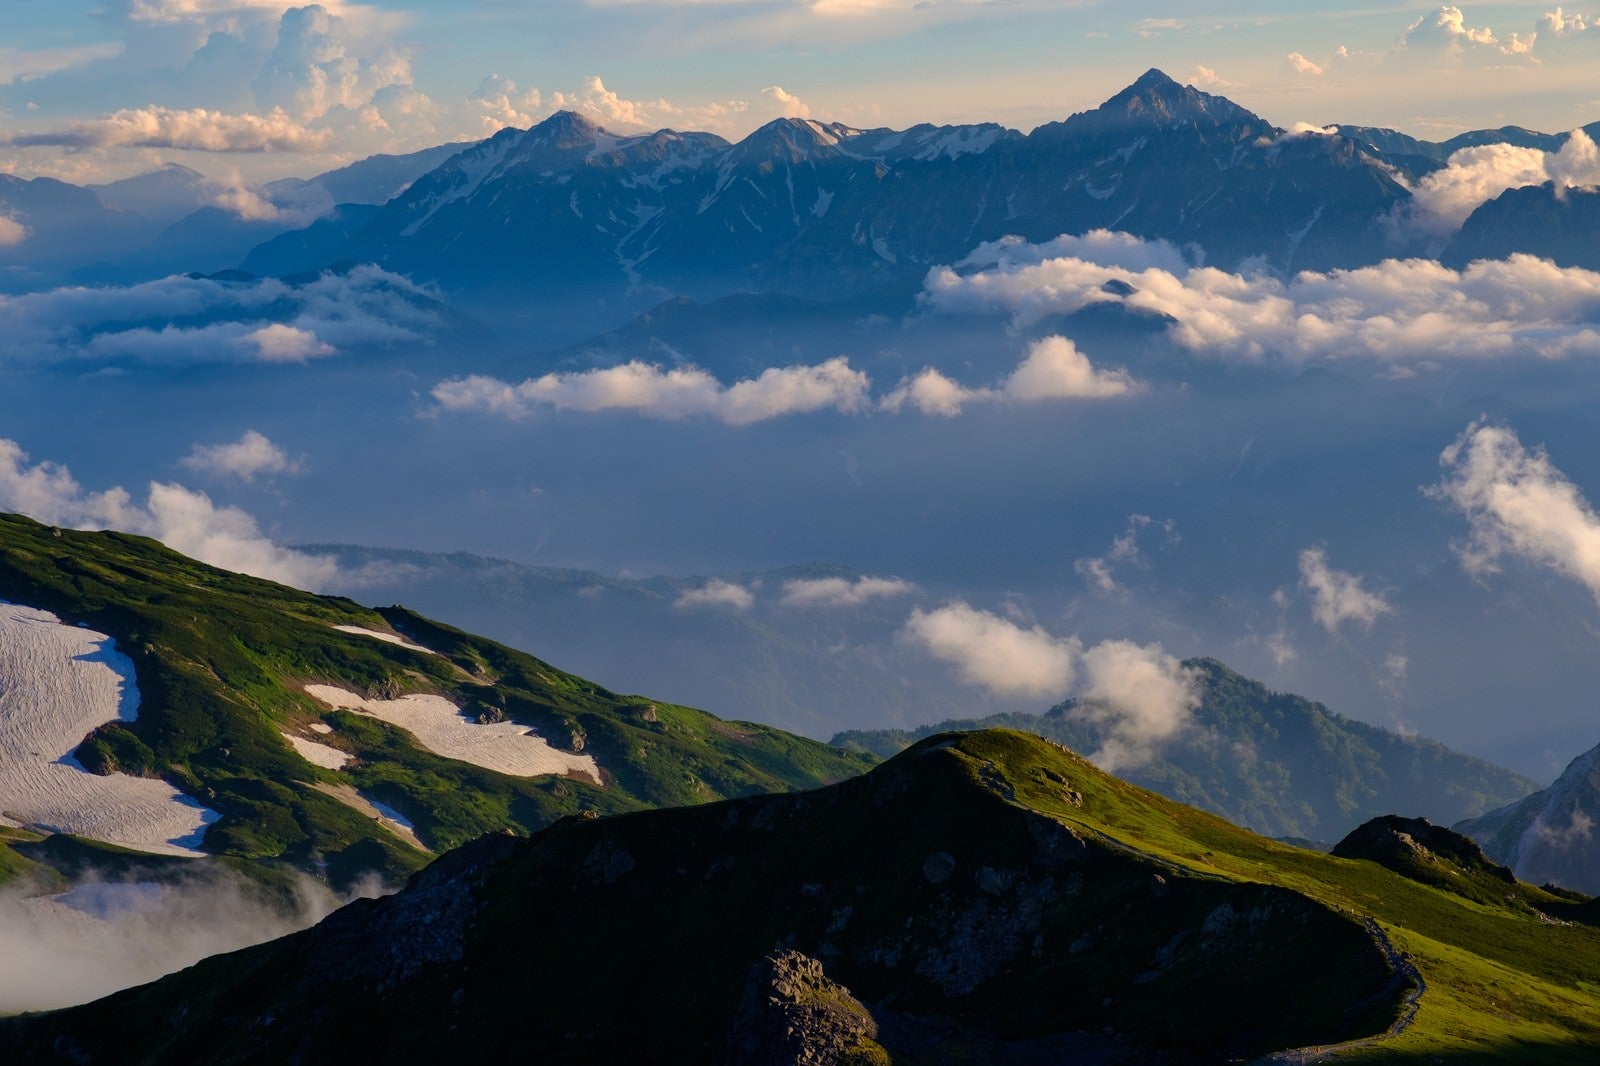 「霞の向こうに見える立山連峰と剱岳」の写真